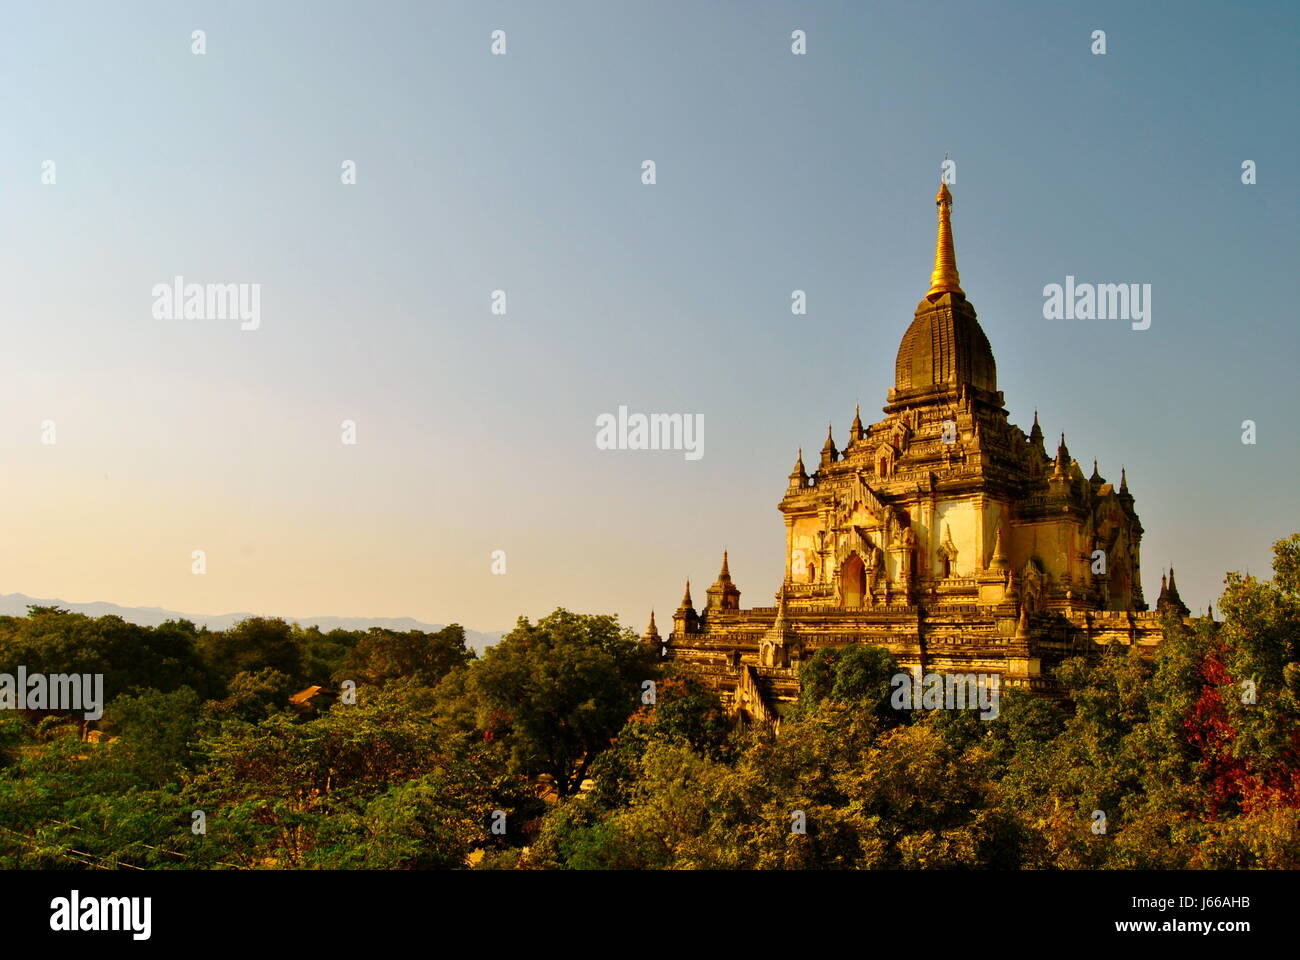 Beautiful ancient temples of Bagan, Myanmar Stock Photo